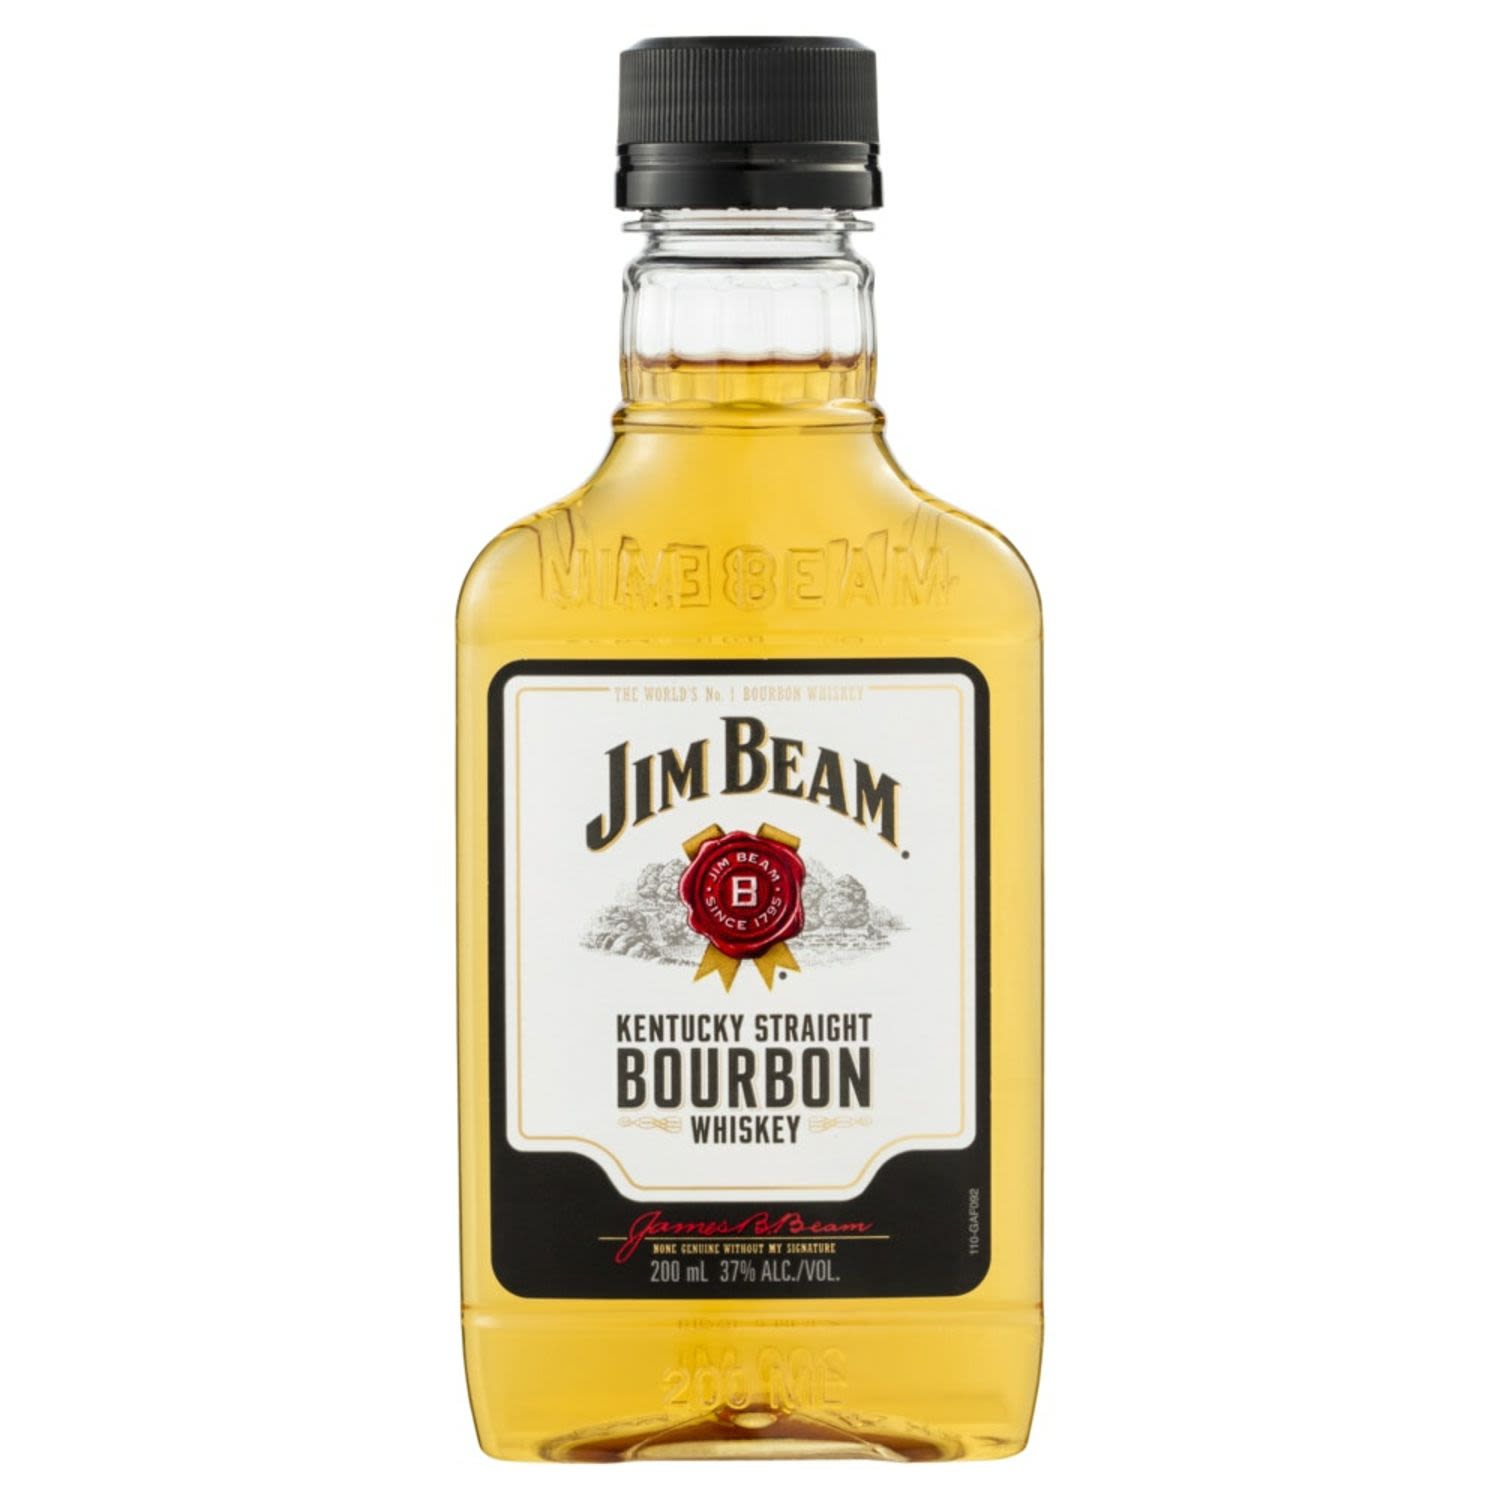 Jim Beam White Label 200mL Bottle